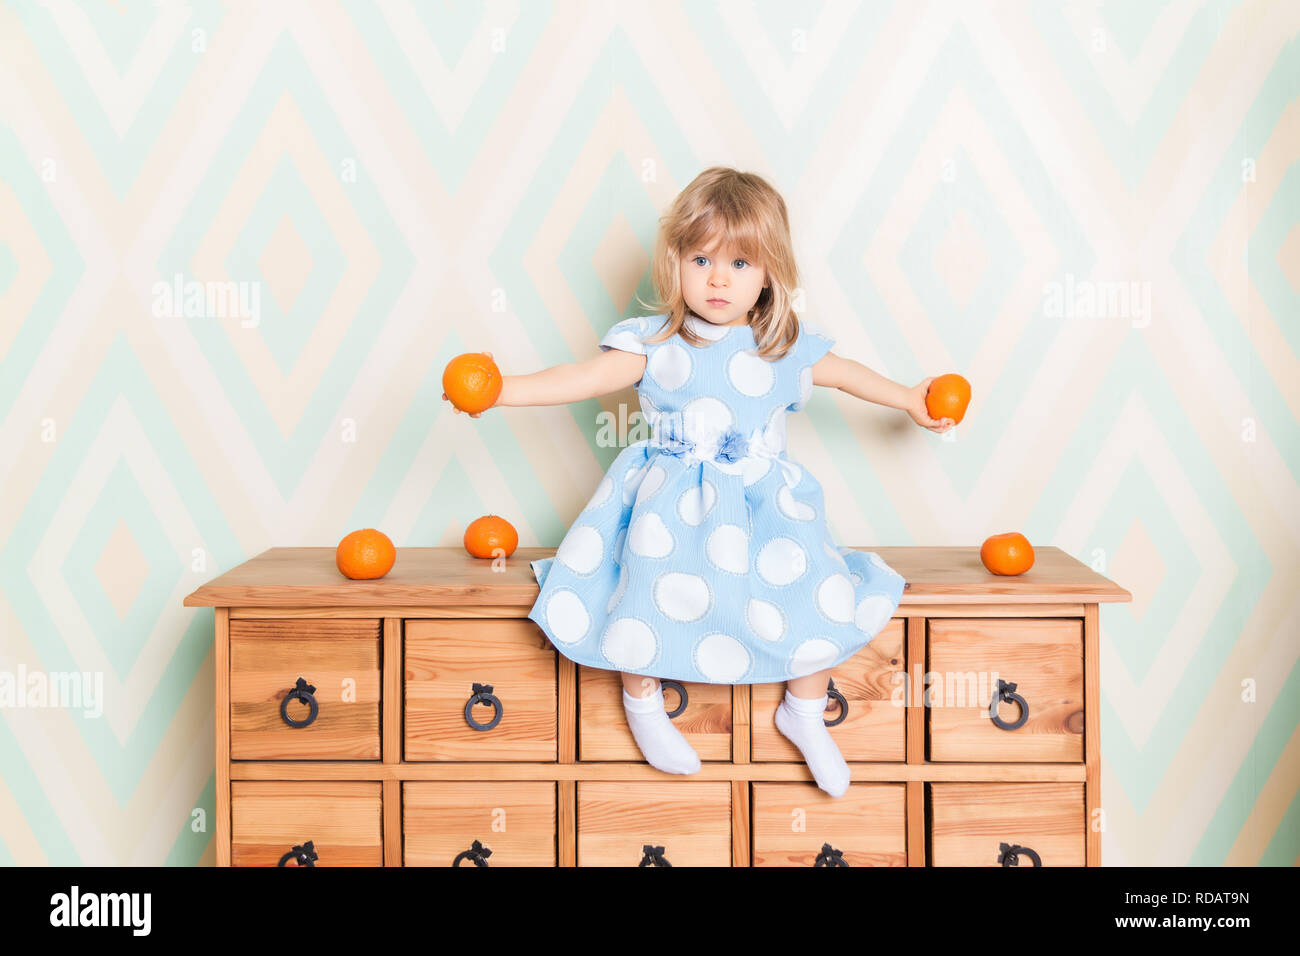 Kleinkind Kind Baby Mädchen im hellblauen Kleid Ernst sitzen auf die  hölzerne Kommode und halten frische Orangen Mandarinen in ihre Hände auf  Raute Hintergrund. Kinder- Emotionen Gefühle Stockfotografie - Alamy